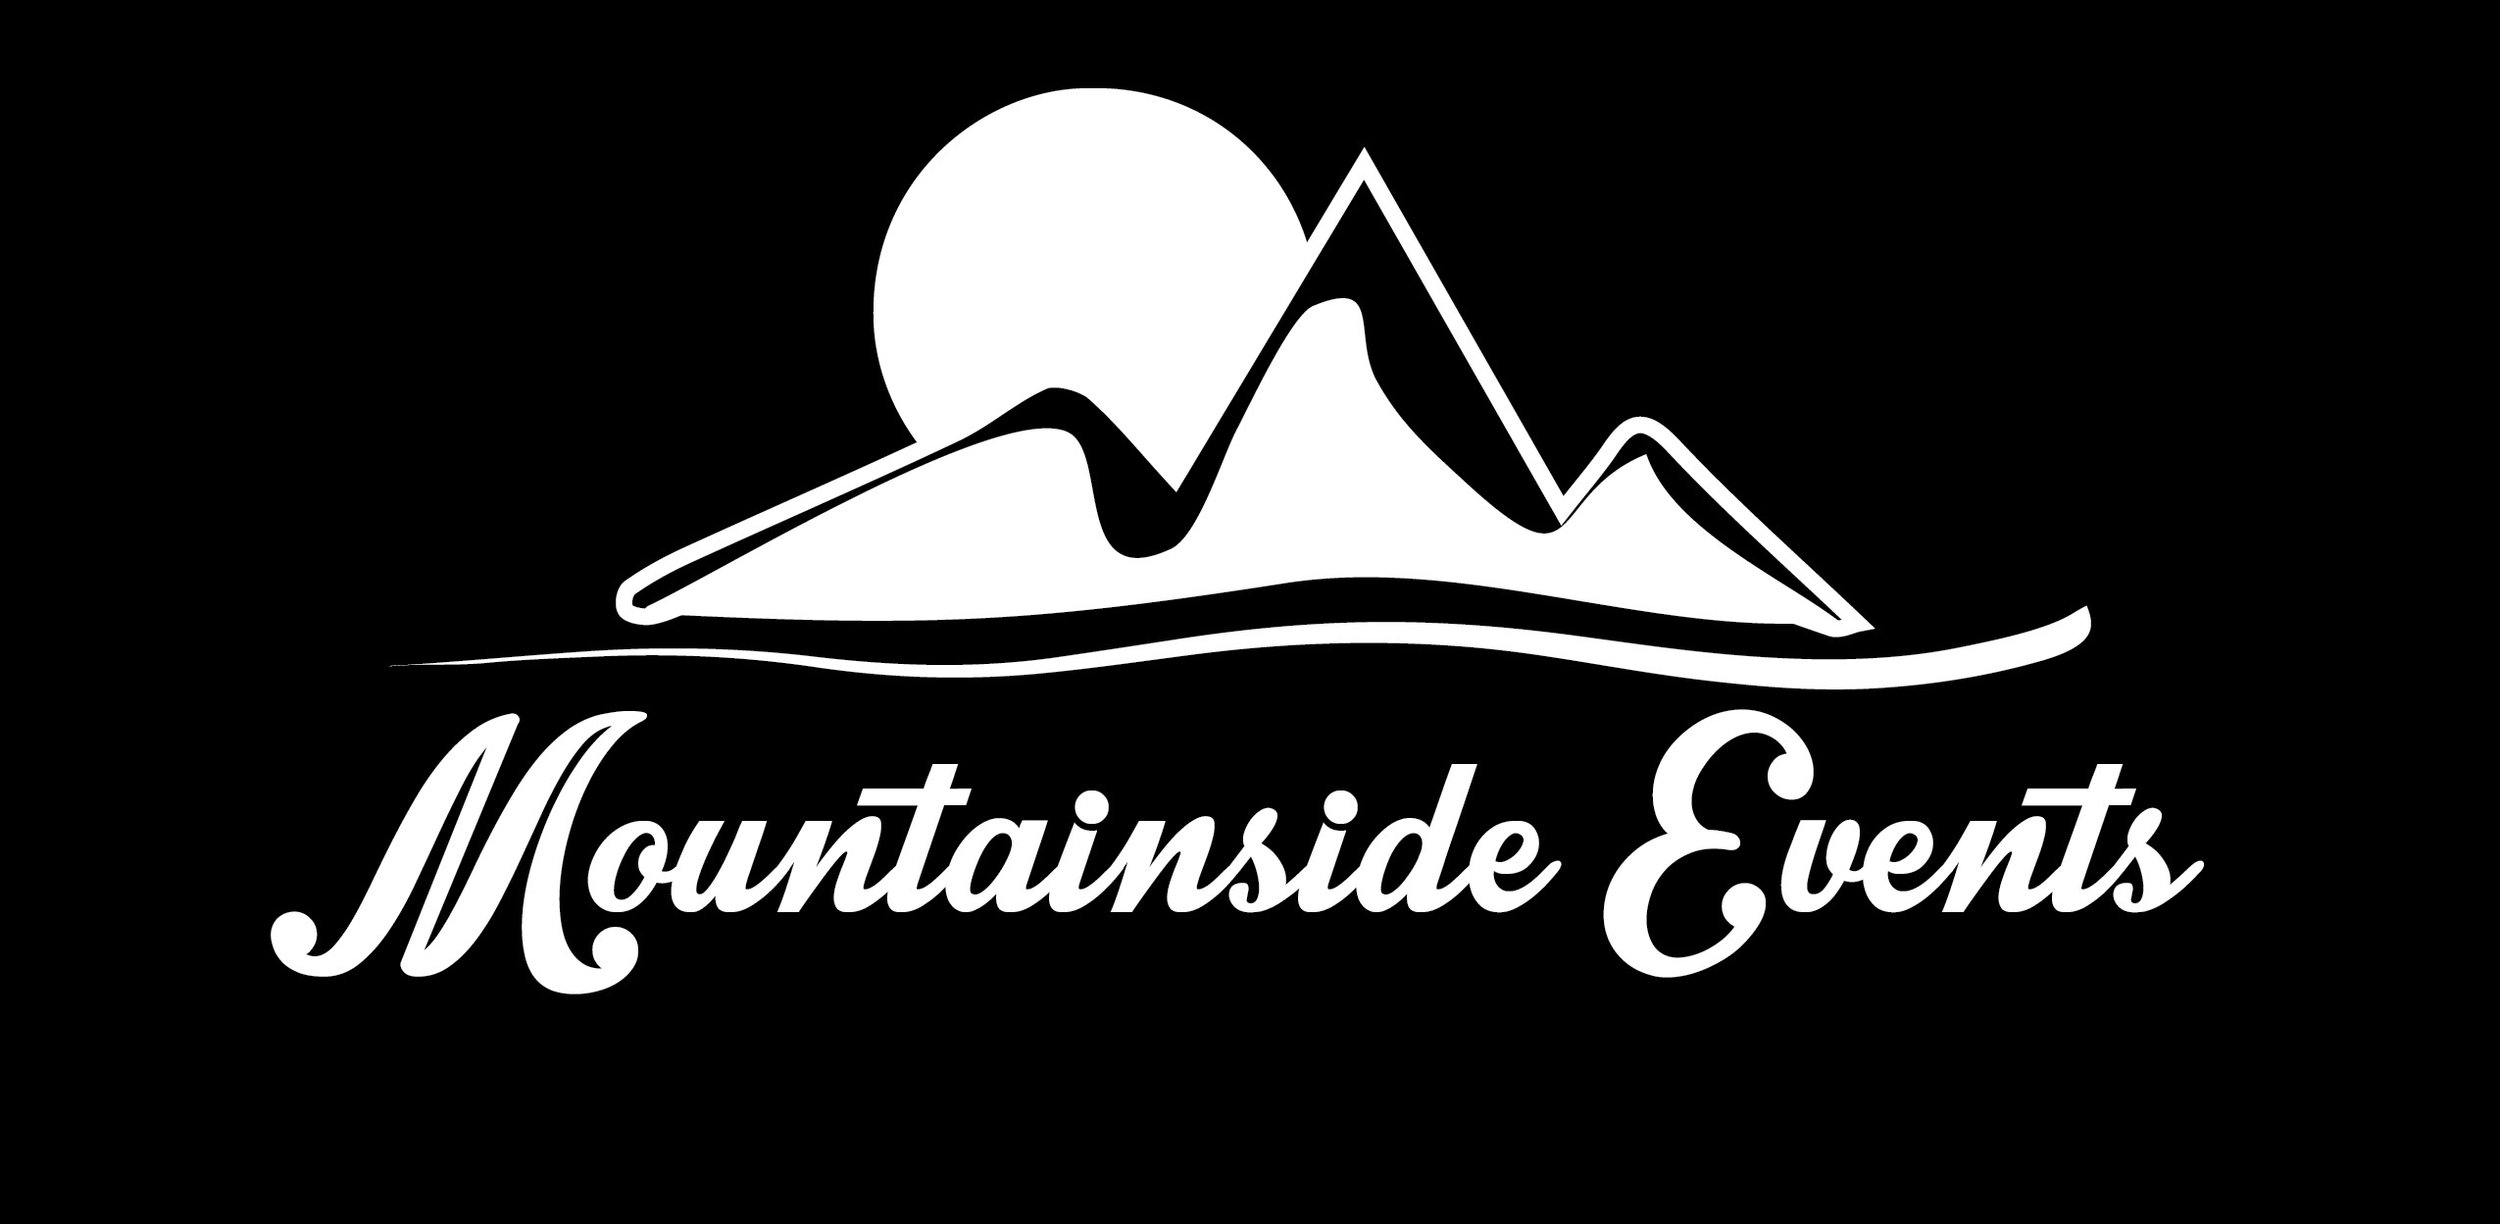 Mountainside Events White on Black.jpg